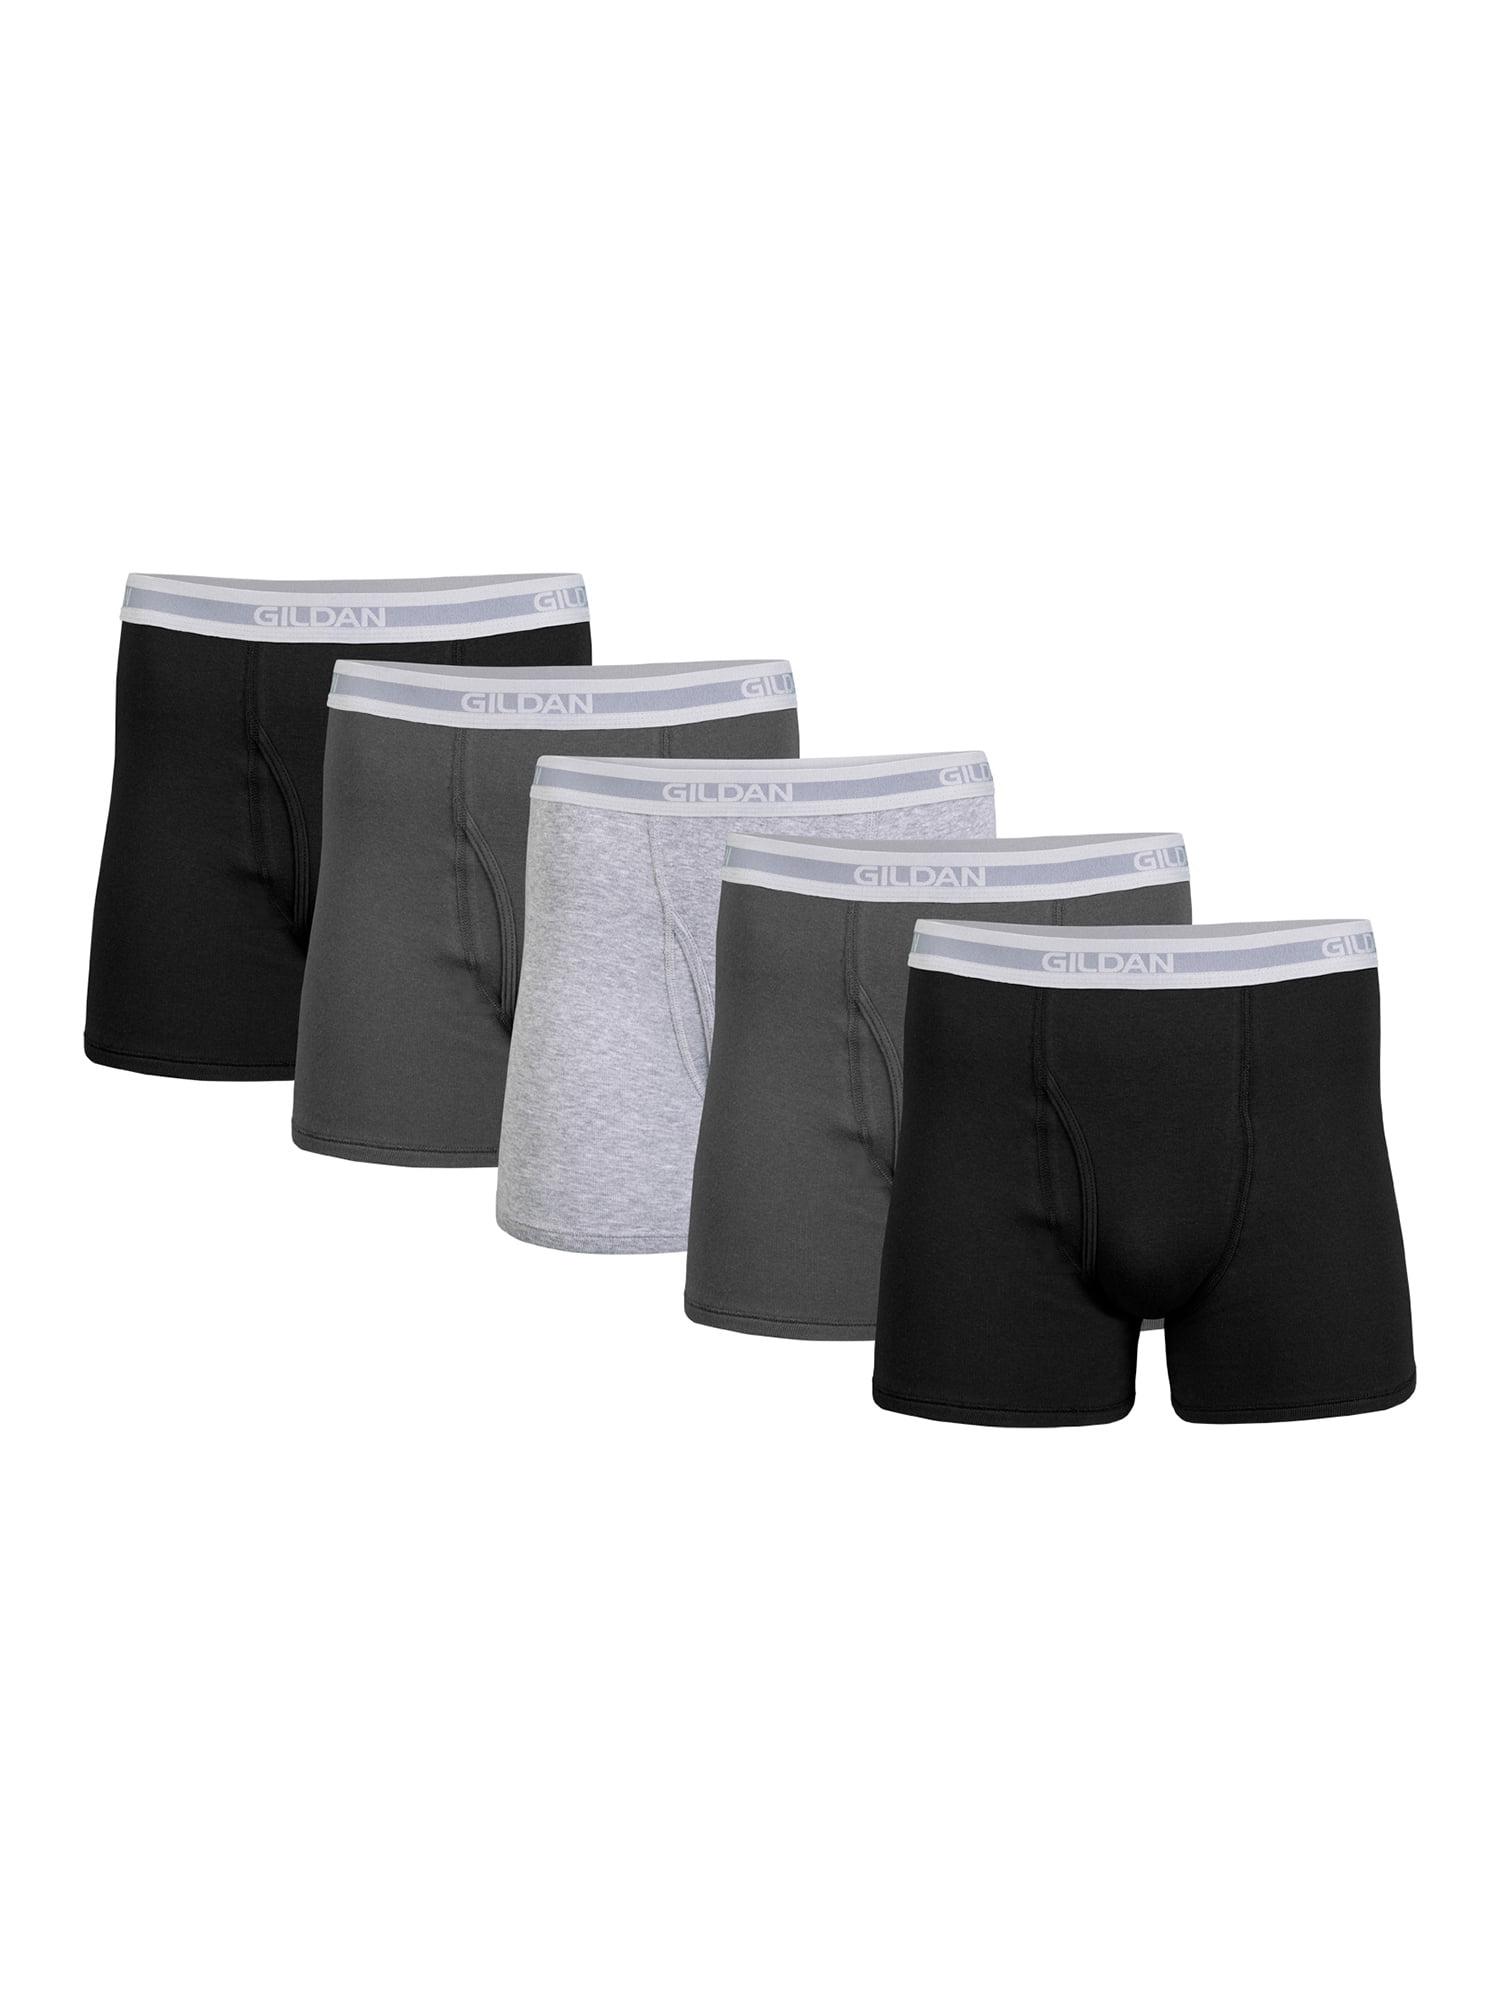 Gildan Adult Men's Short Leg Boxer Briefs, 5-Pack, Sizes S-2XL, 3